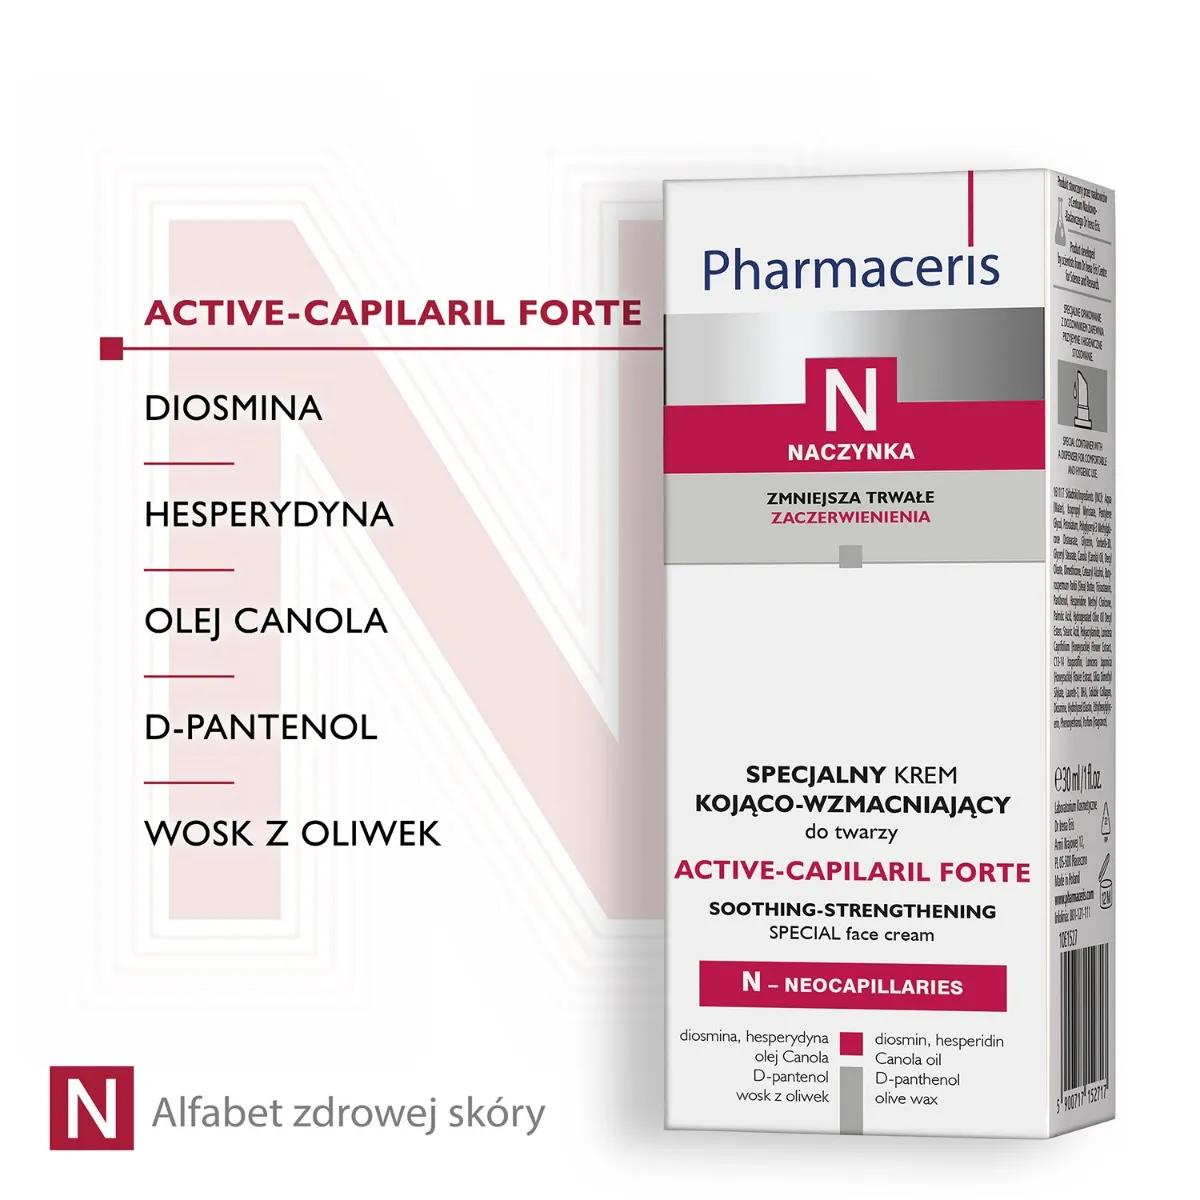 Pharmaceris N Active-Capilaril forte specjalny krem kojąco-wzmacniający 30 ml 